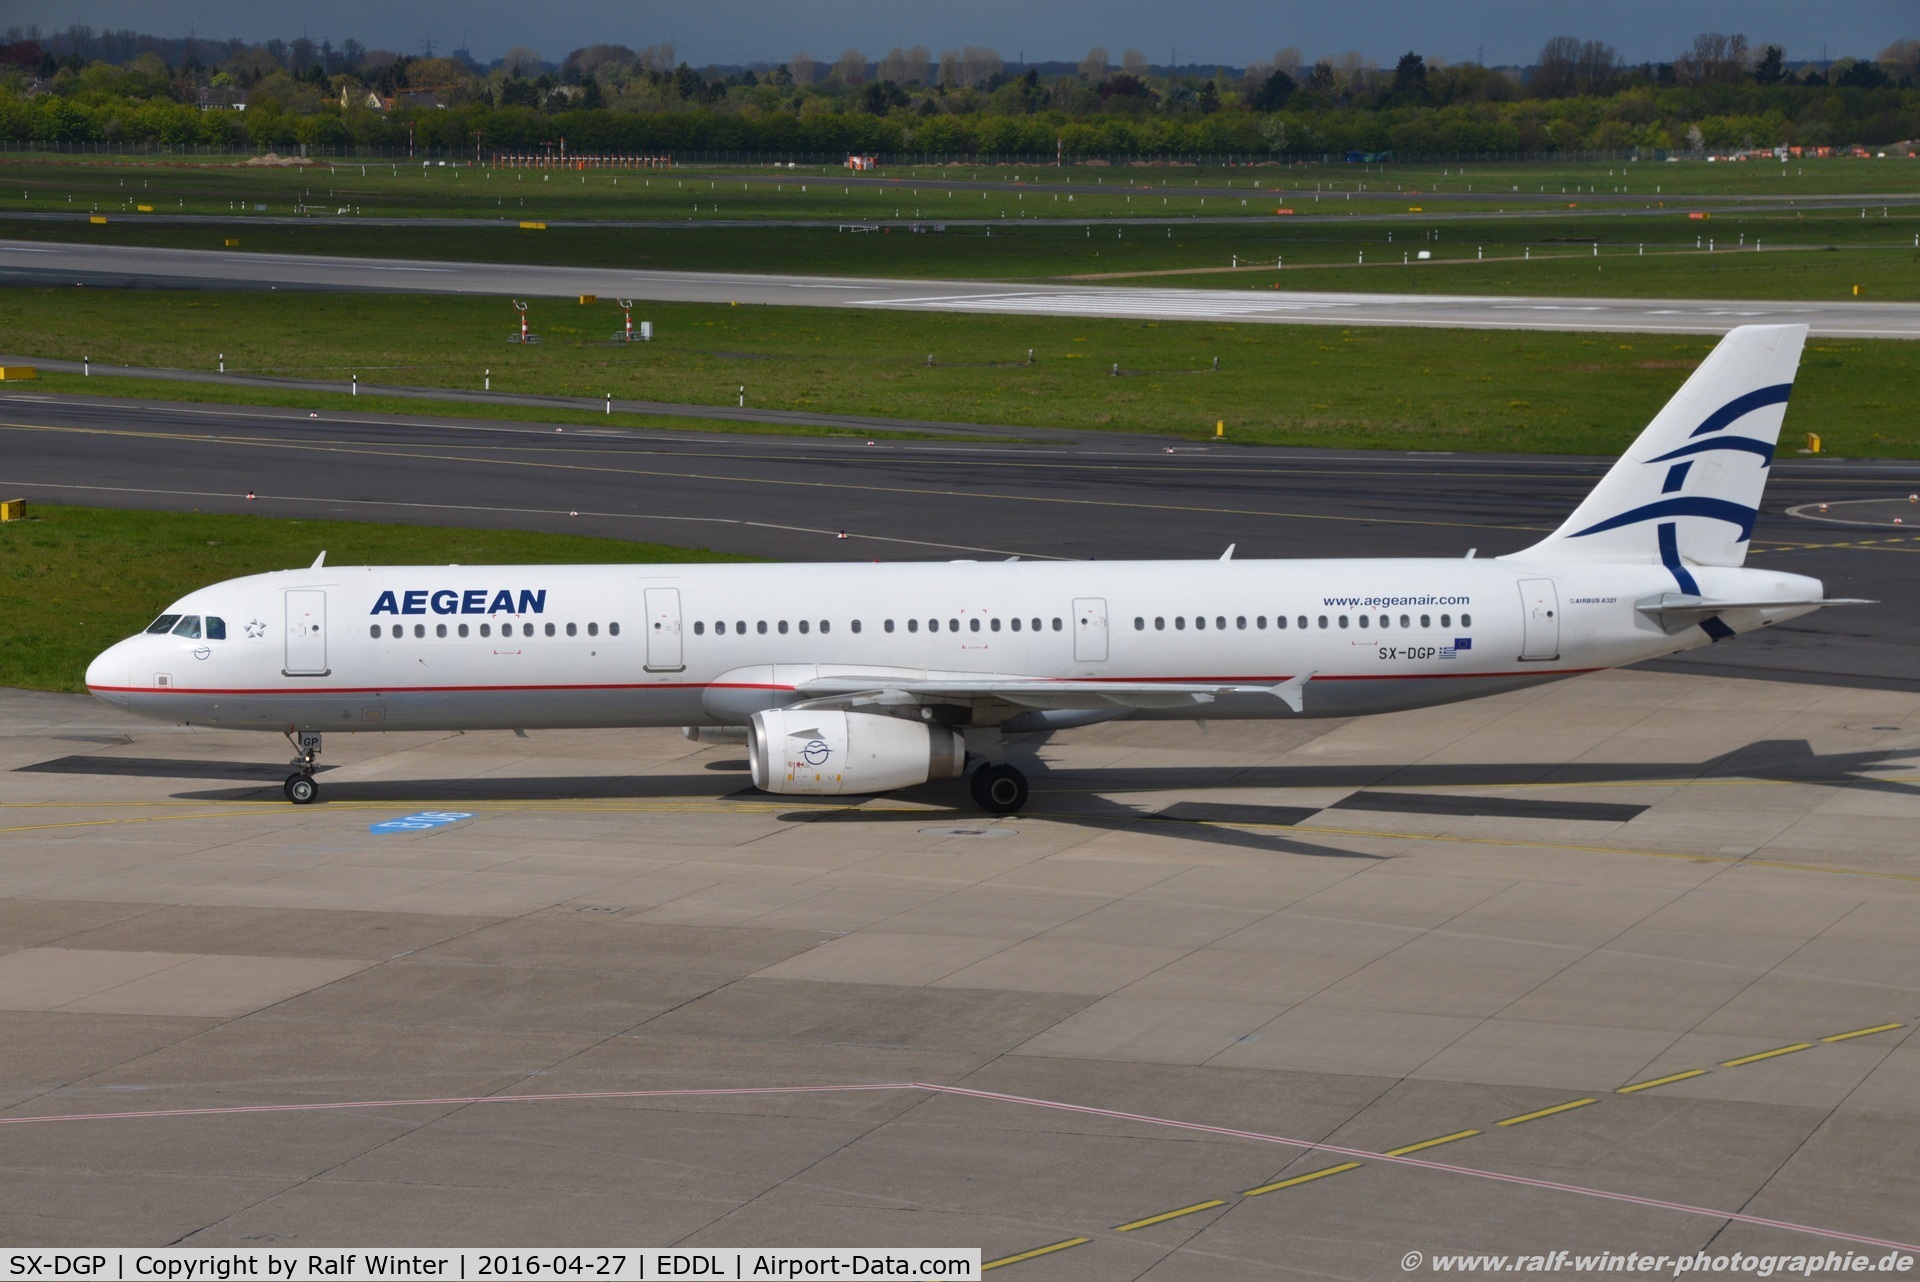 SX-DGP, 2007 Airbus A321-232 C/N 3302, Airbus A321-232 - A3 AEE Aegean Airlines - 3302 - SX-DGP - 27.04.2016 - DUS